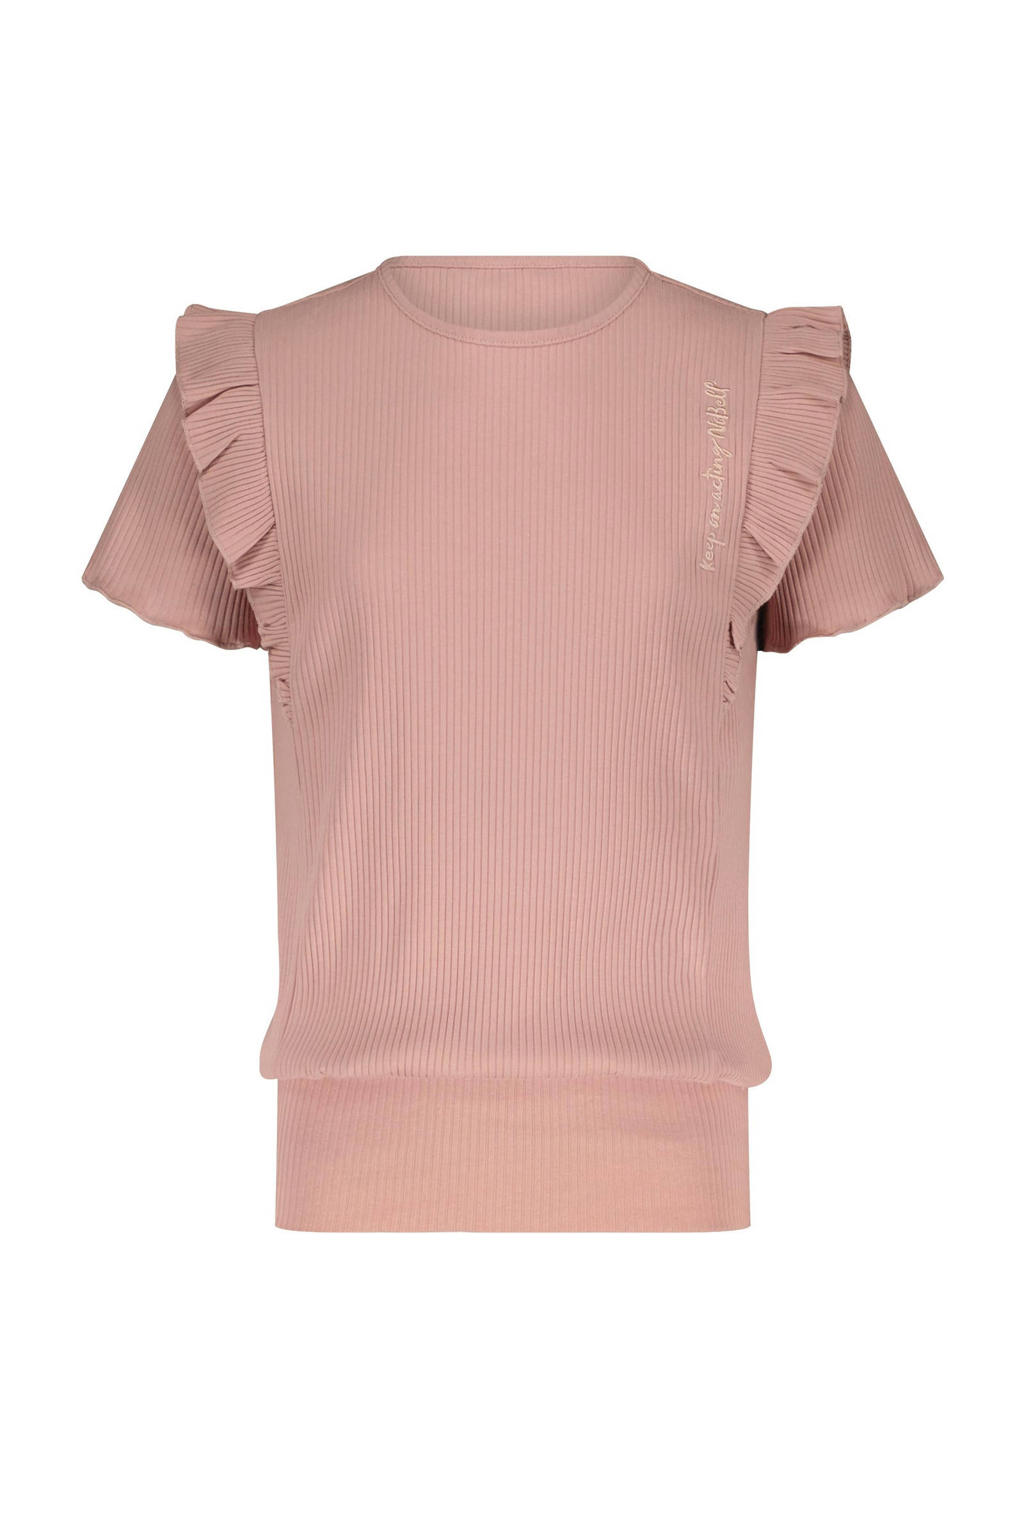 Roze meisjes NoBell’ T-shirt Kex van katoen met korte mouwen, ronde hals en ruches